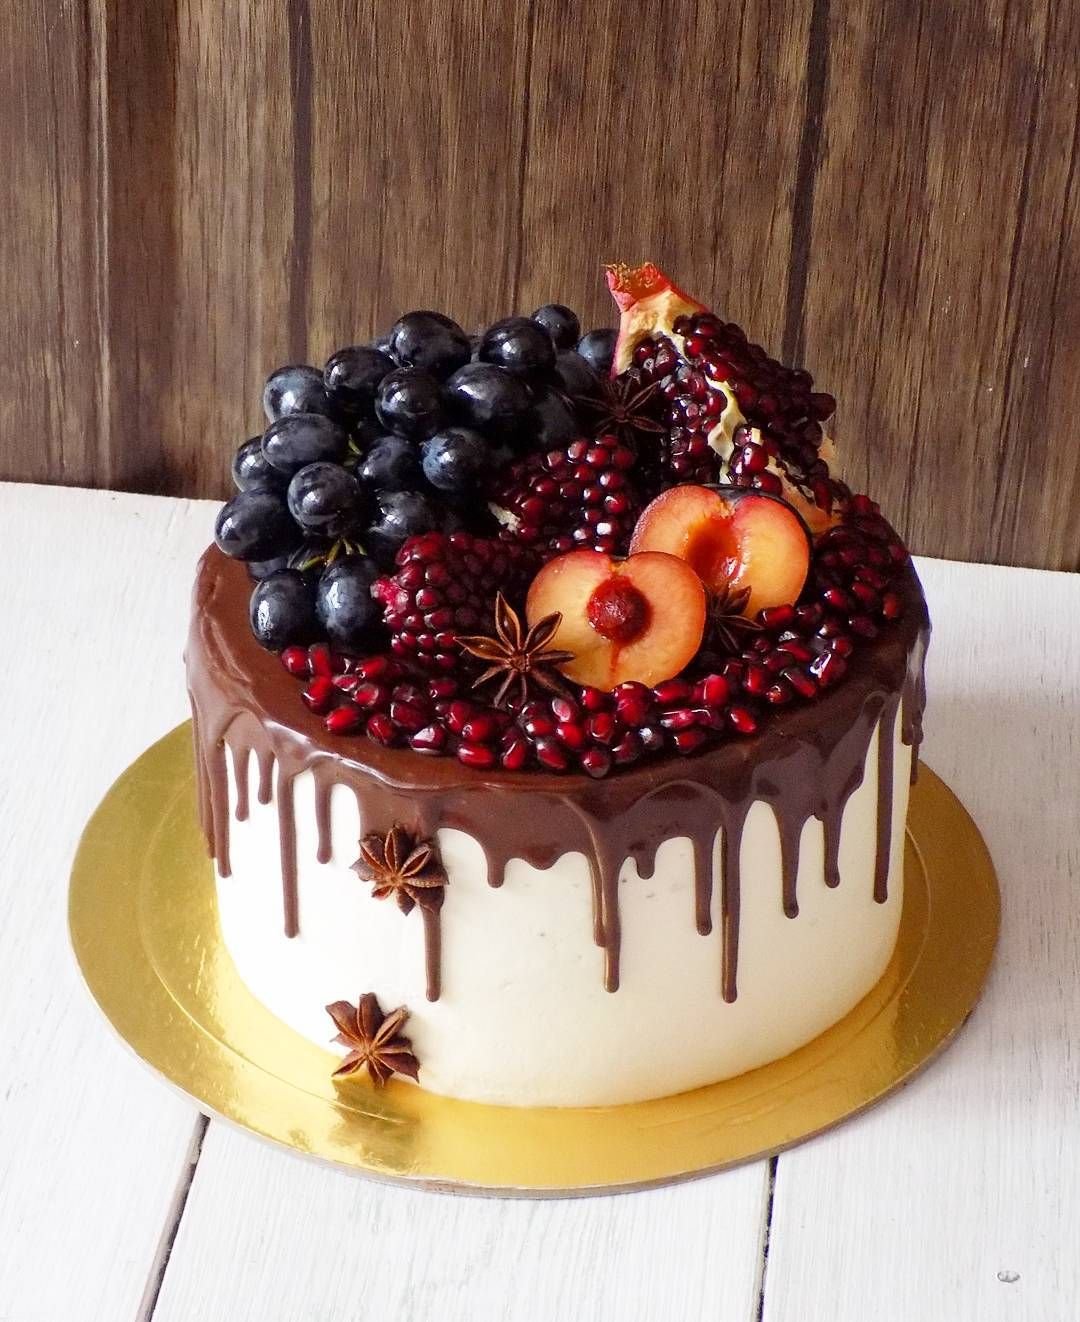 фото шоколадного торта с фруктами